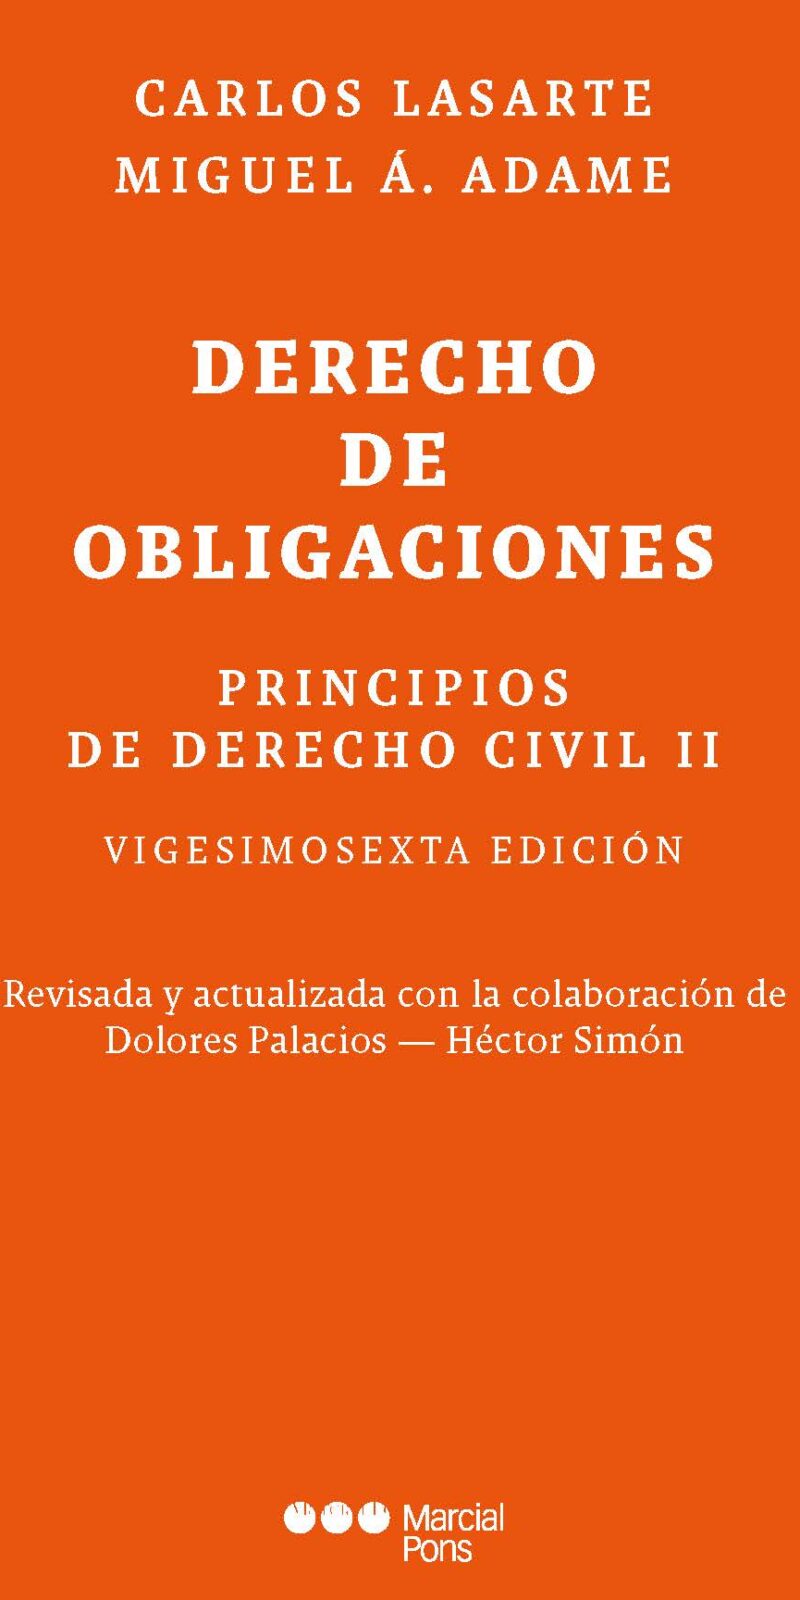 principios de derecho civil tomo II